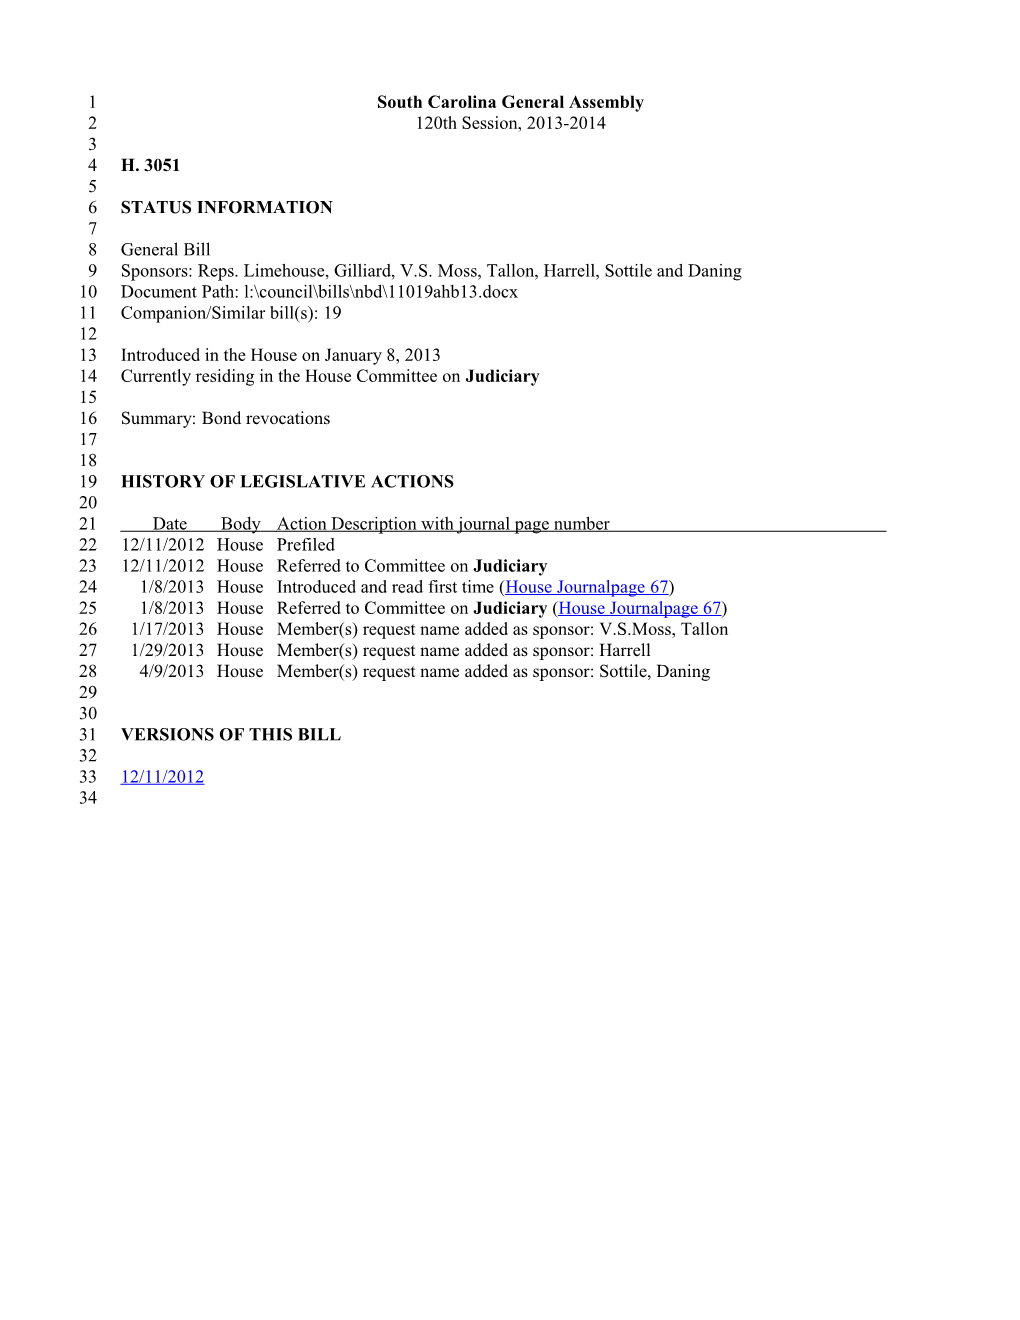 2013-2014 Bill 3051: Bond Revocations - South Carolina Legislature Online